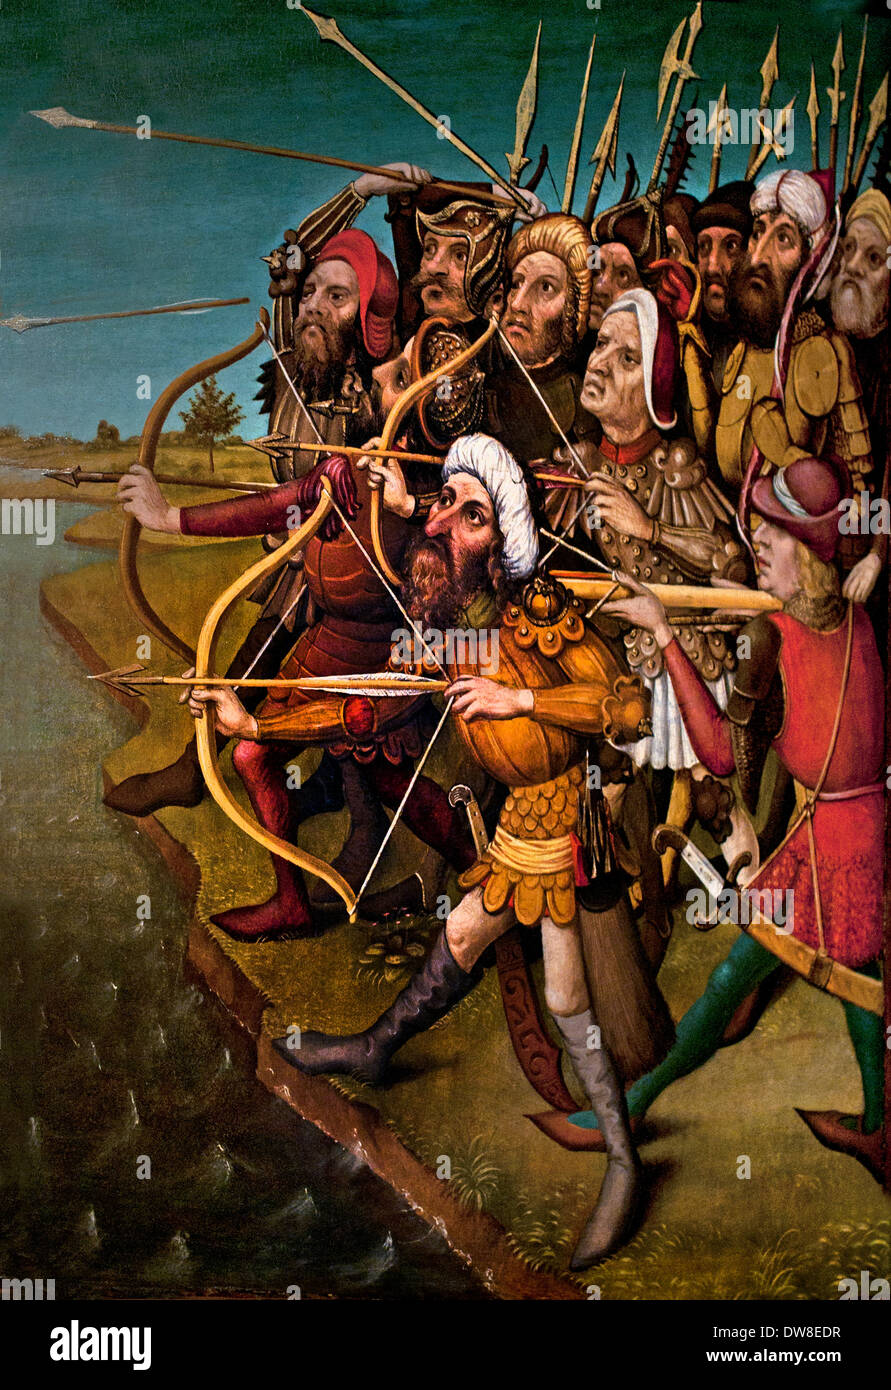 Bogenschützen ihre Pfeile - Bogenschützen 1450 obere Rhein Colmar Frankreich Französisch zu deaktivieren Stockfoto